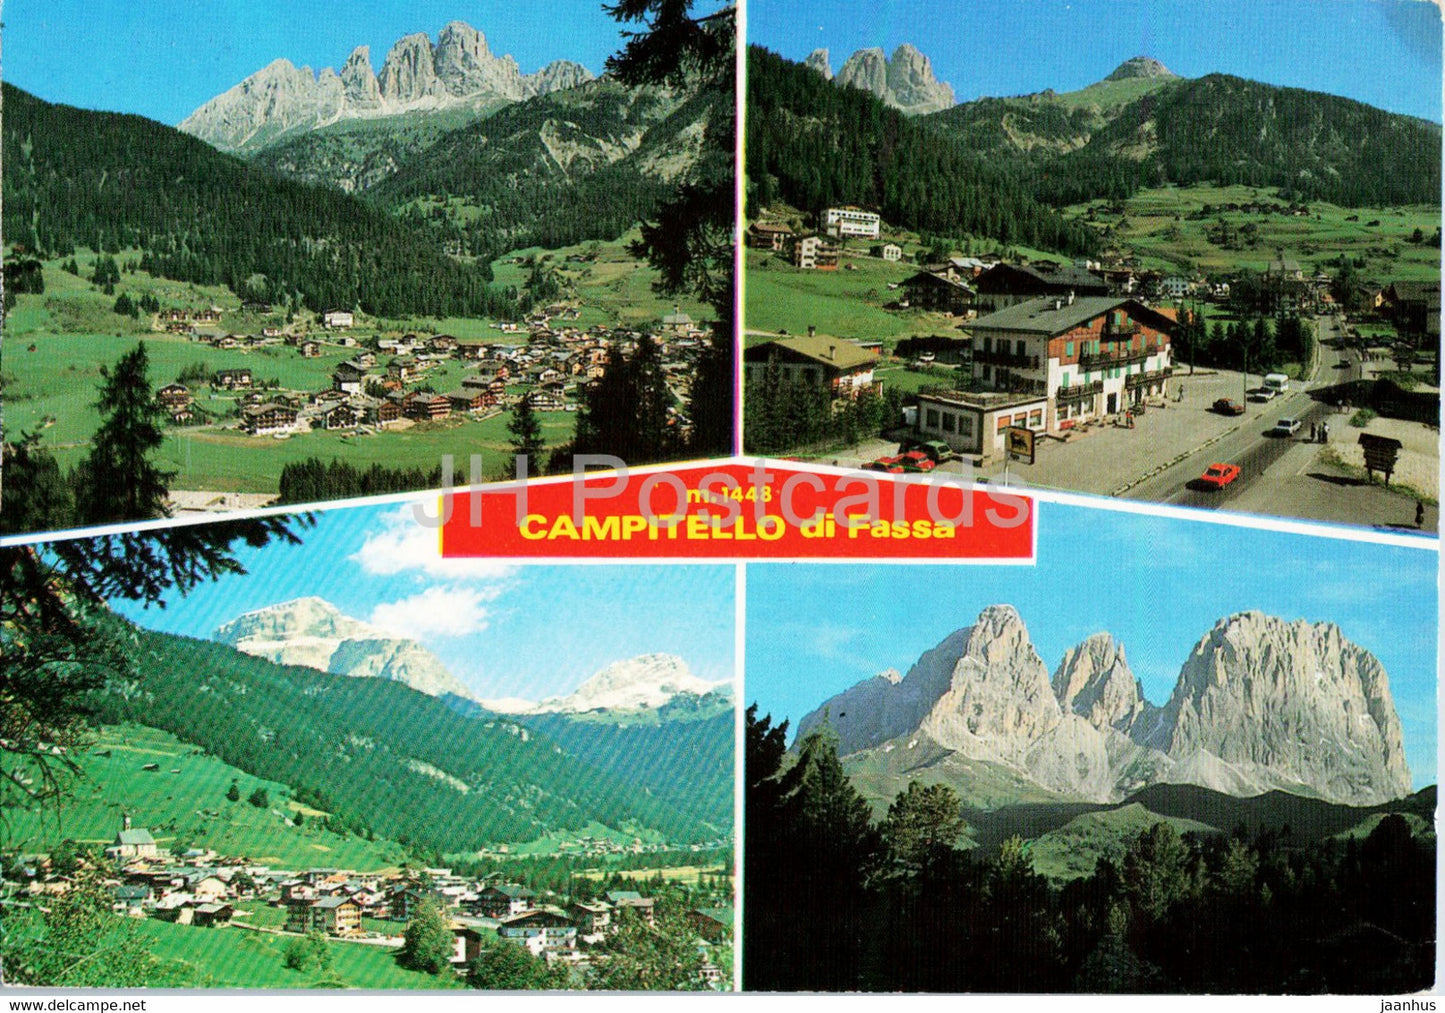 Campitello di Fassa - 1985 - Italy - used - JH Postcards